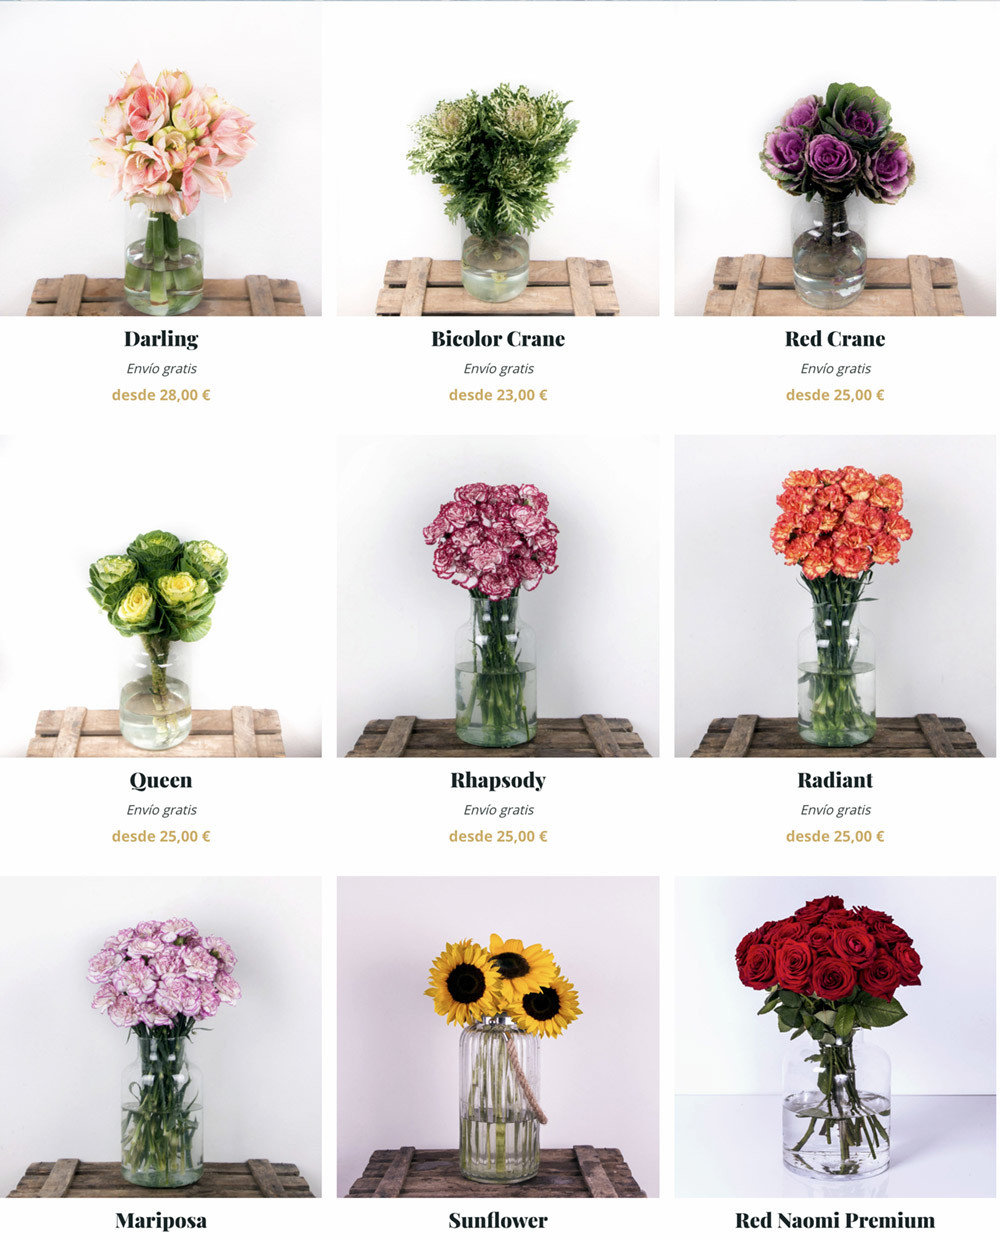 Christchurch Dormitorio cazar Las mejores aplicaciones para enviar flores a domicilio